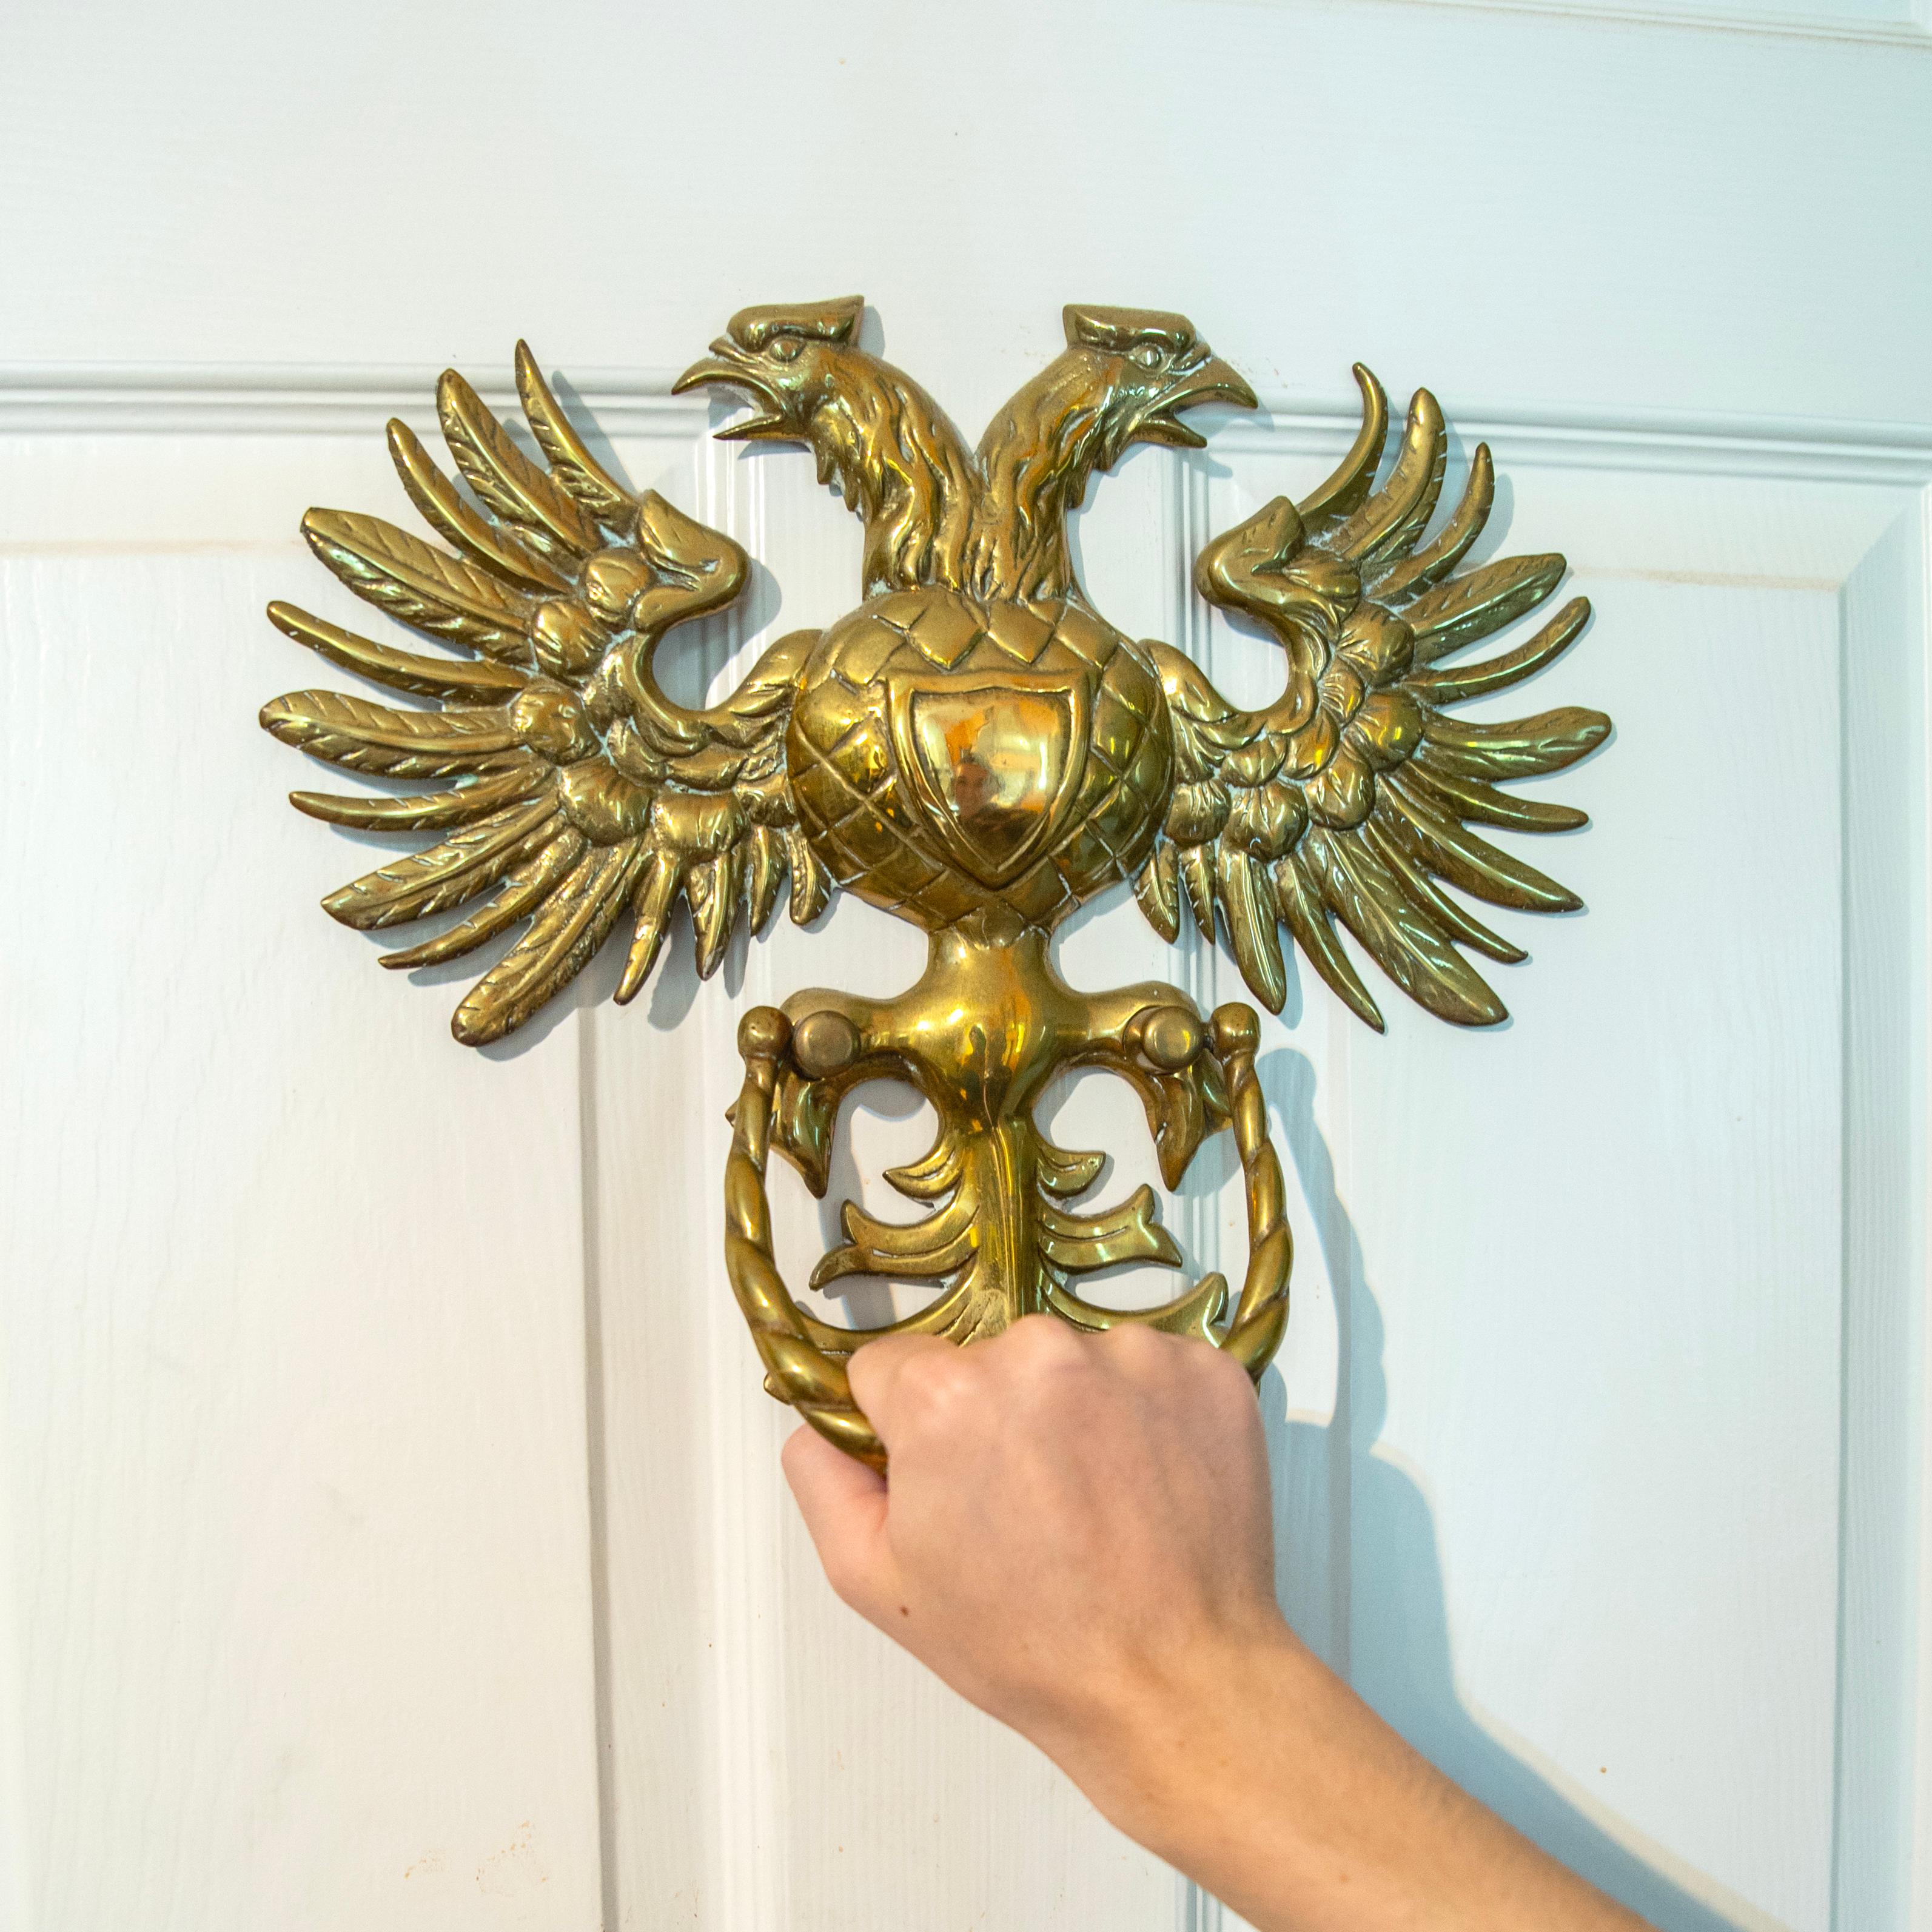 Russian Large Brass Double-headed Eagle Door Knocker, 20th Century